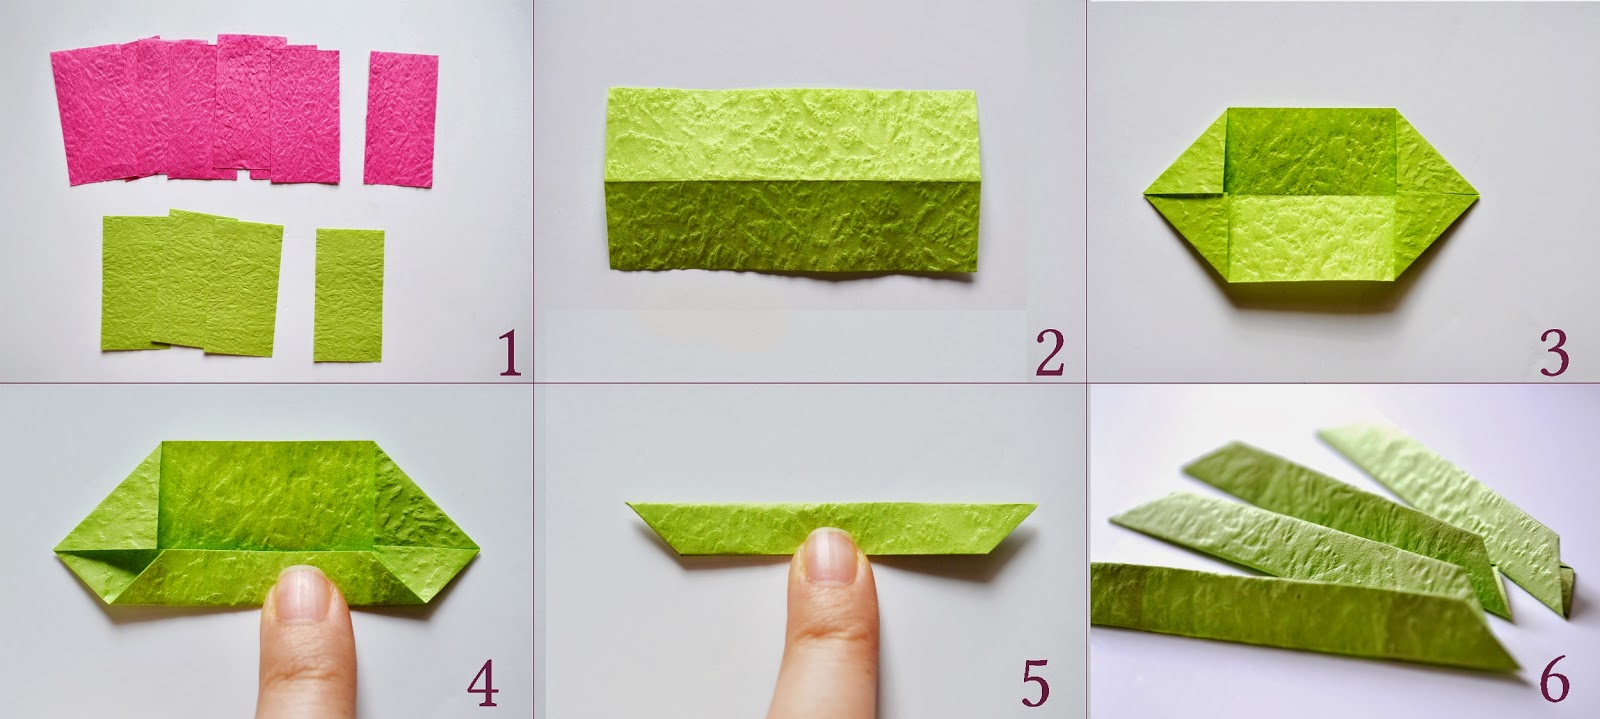 Лотос оригами-складываем зеленый модуль